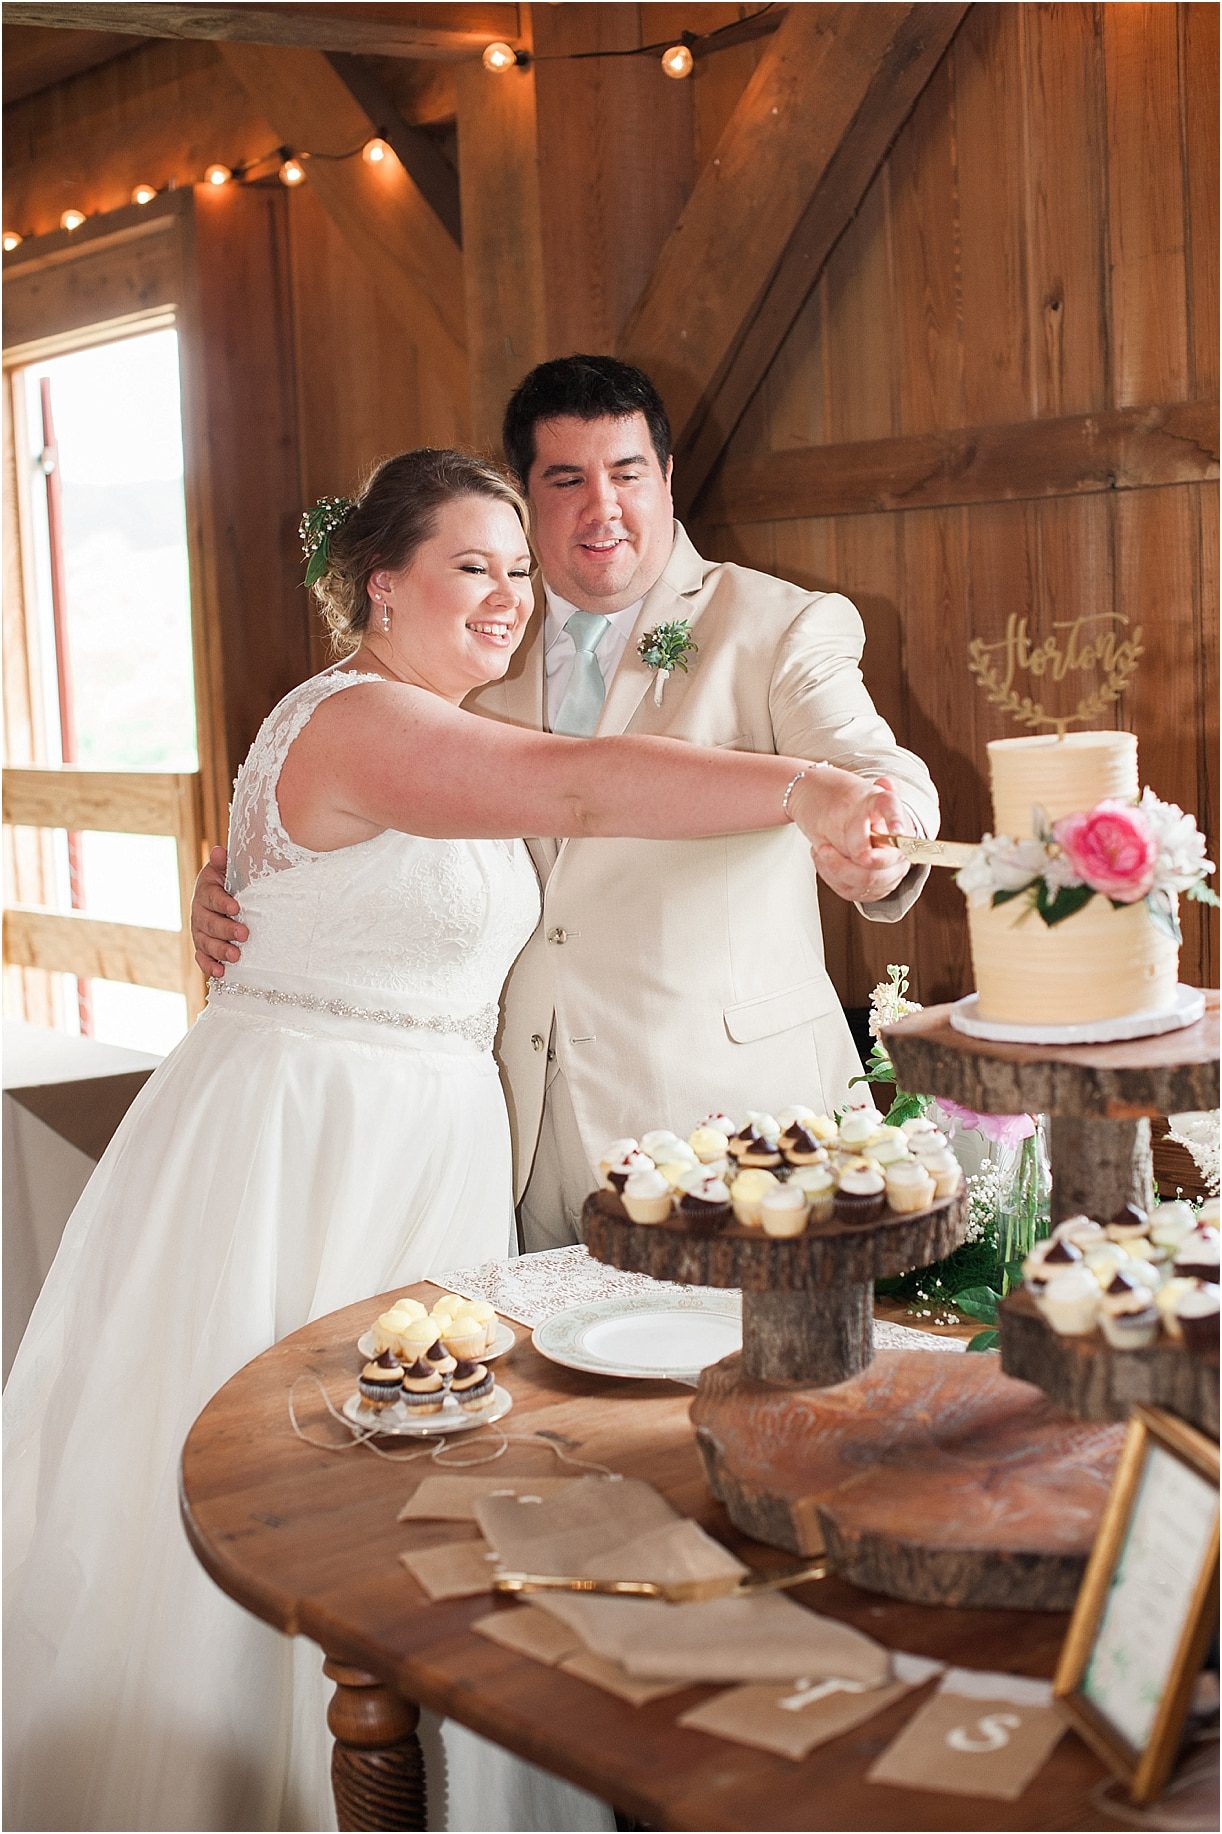 Virginia Barn Wedding as seen on Hill City Bride Wedding Blog - cake, cutting